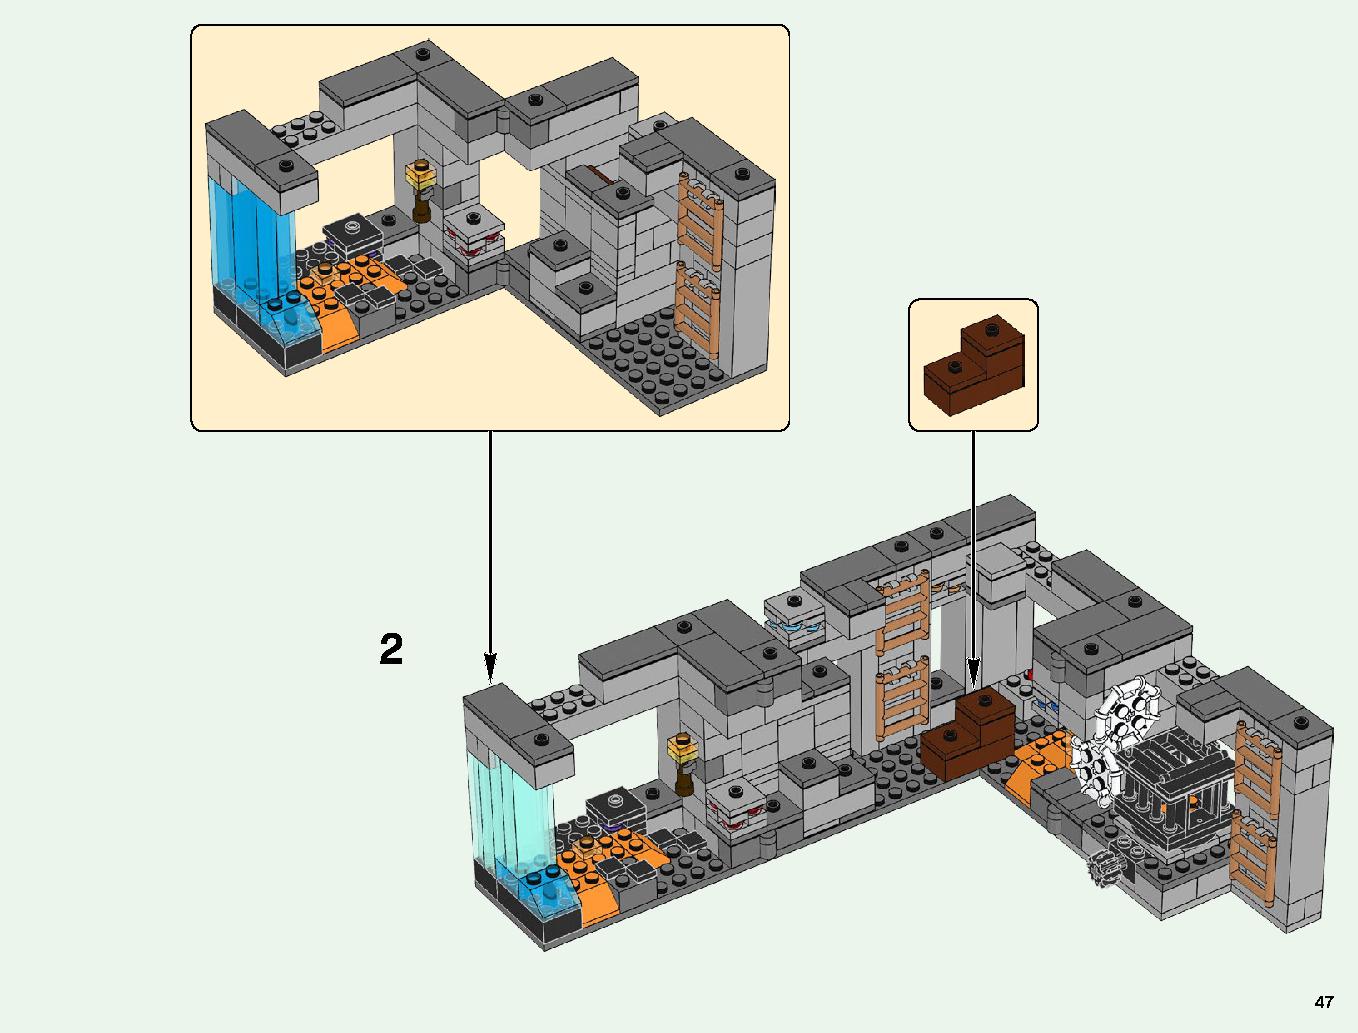 ベッドロックの冒険 21147 レゴの商品情報 レゴの説明書・組立方法 47 page